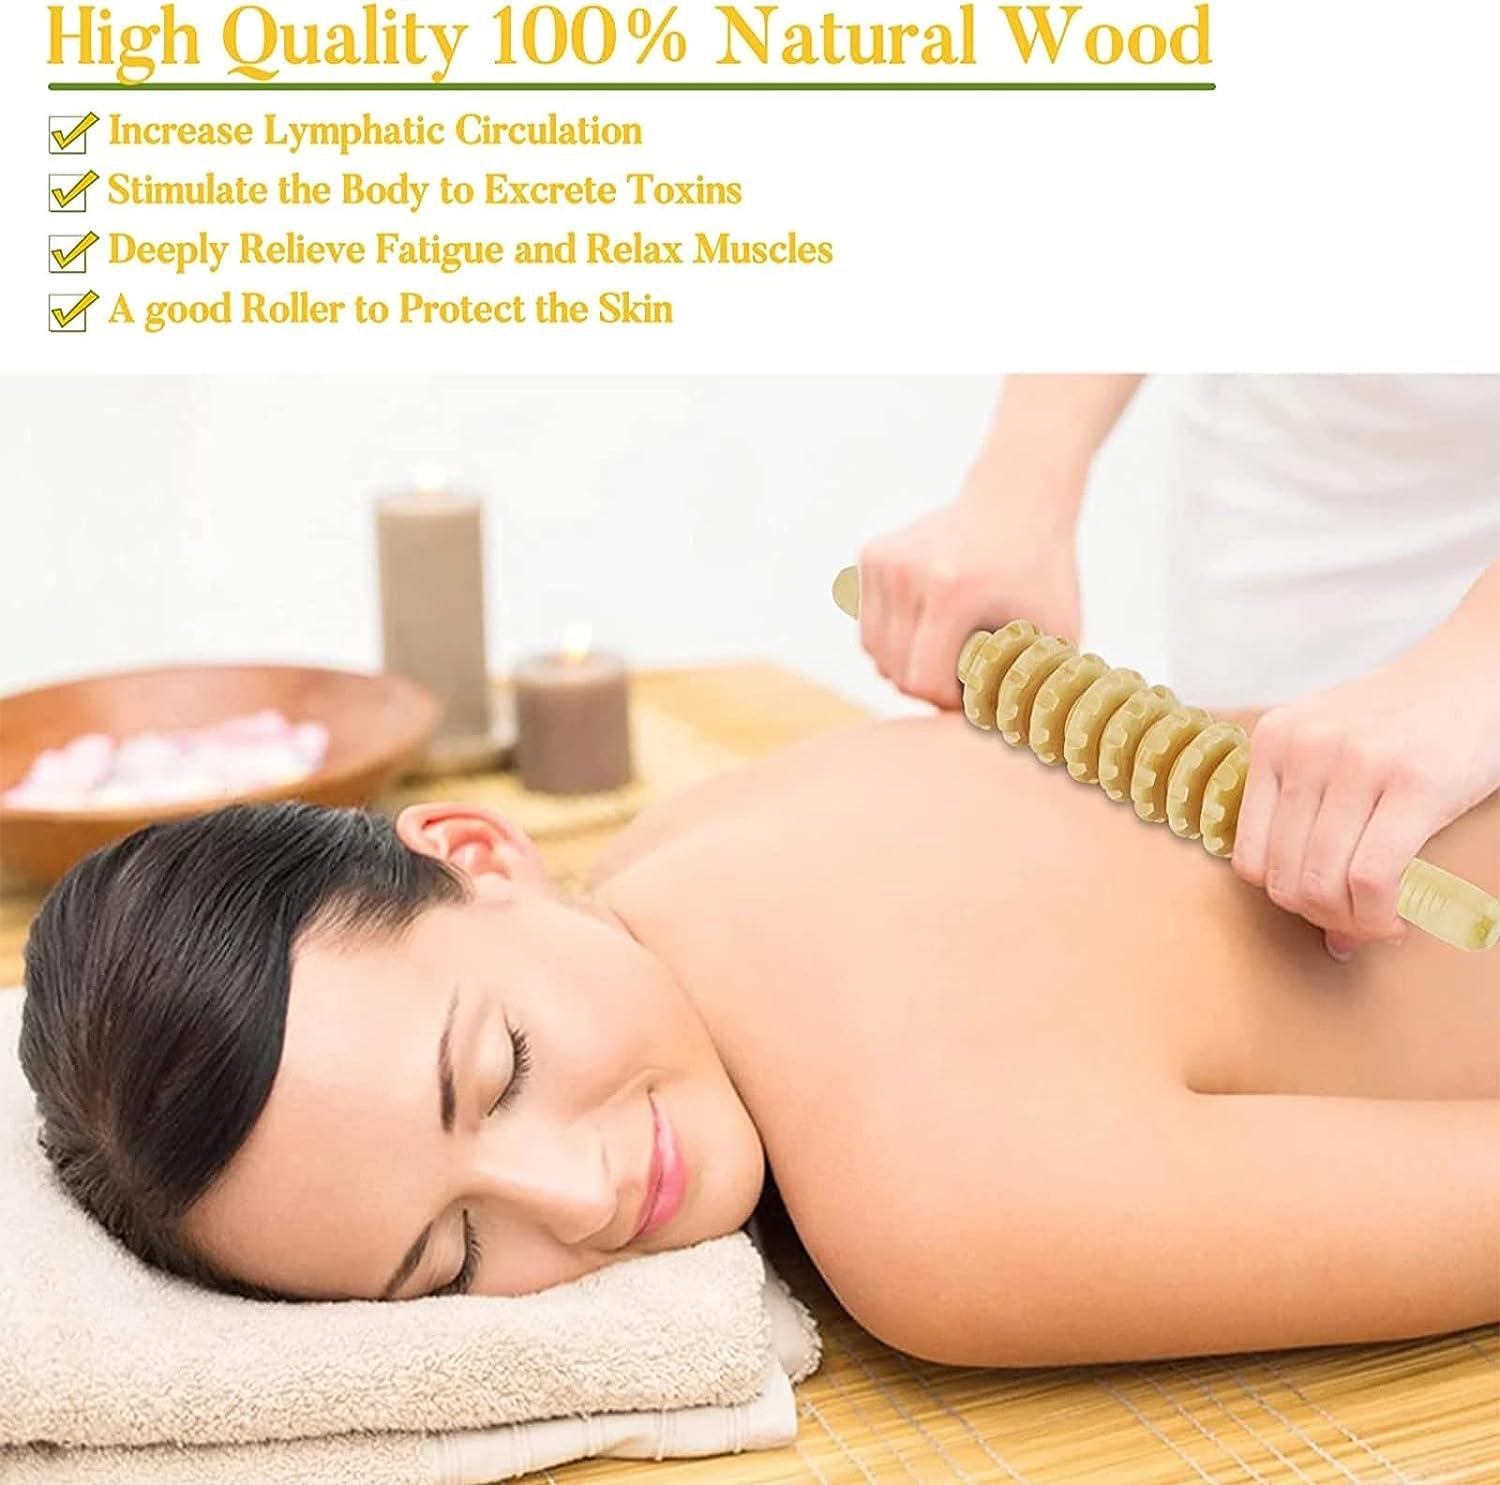 Con lăn massage cao cấp gỗ, con lăn massage lưng con lăn massage có tay cầm, thích hợp cho cổ, chân, lưng, toàn thân